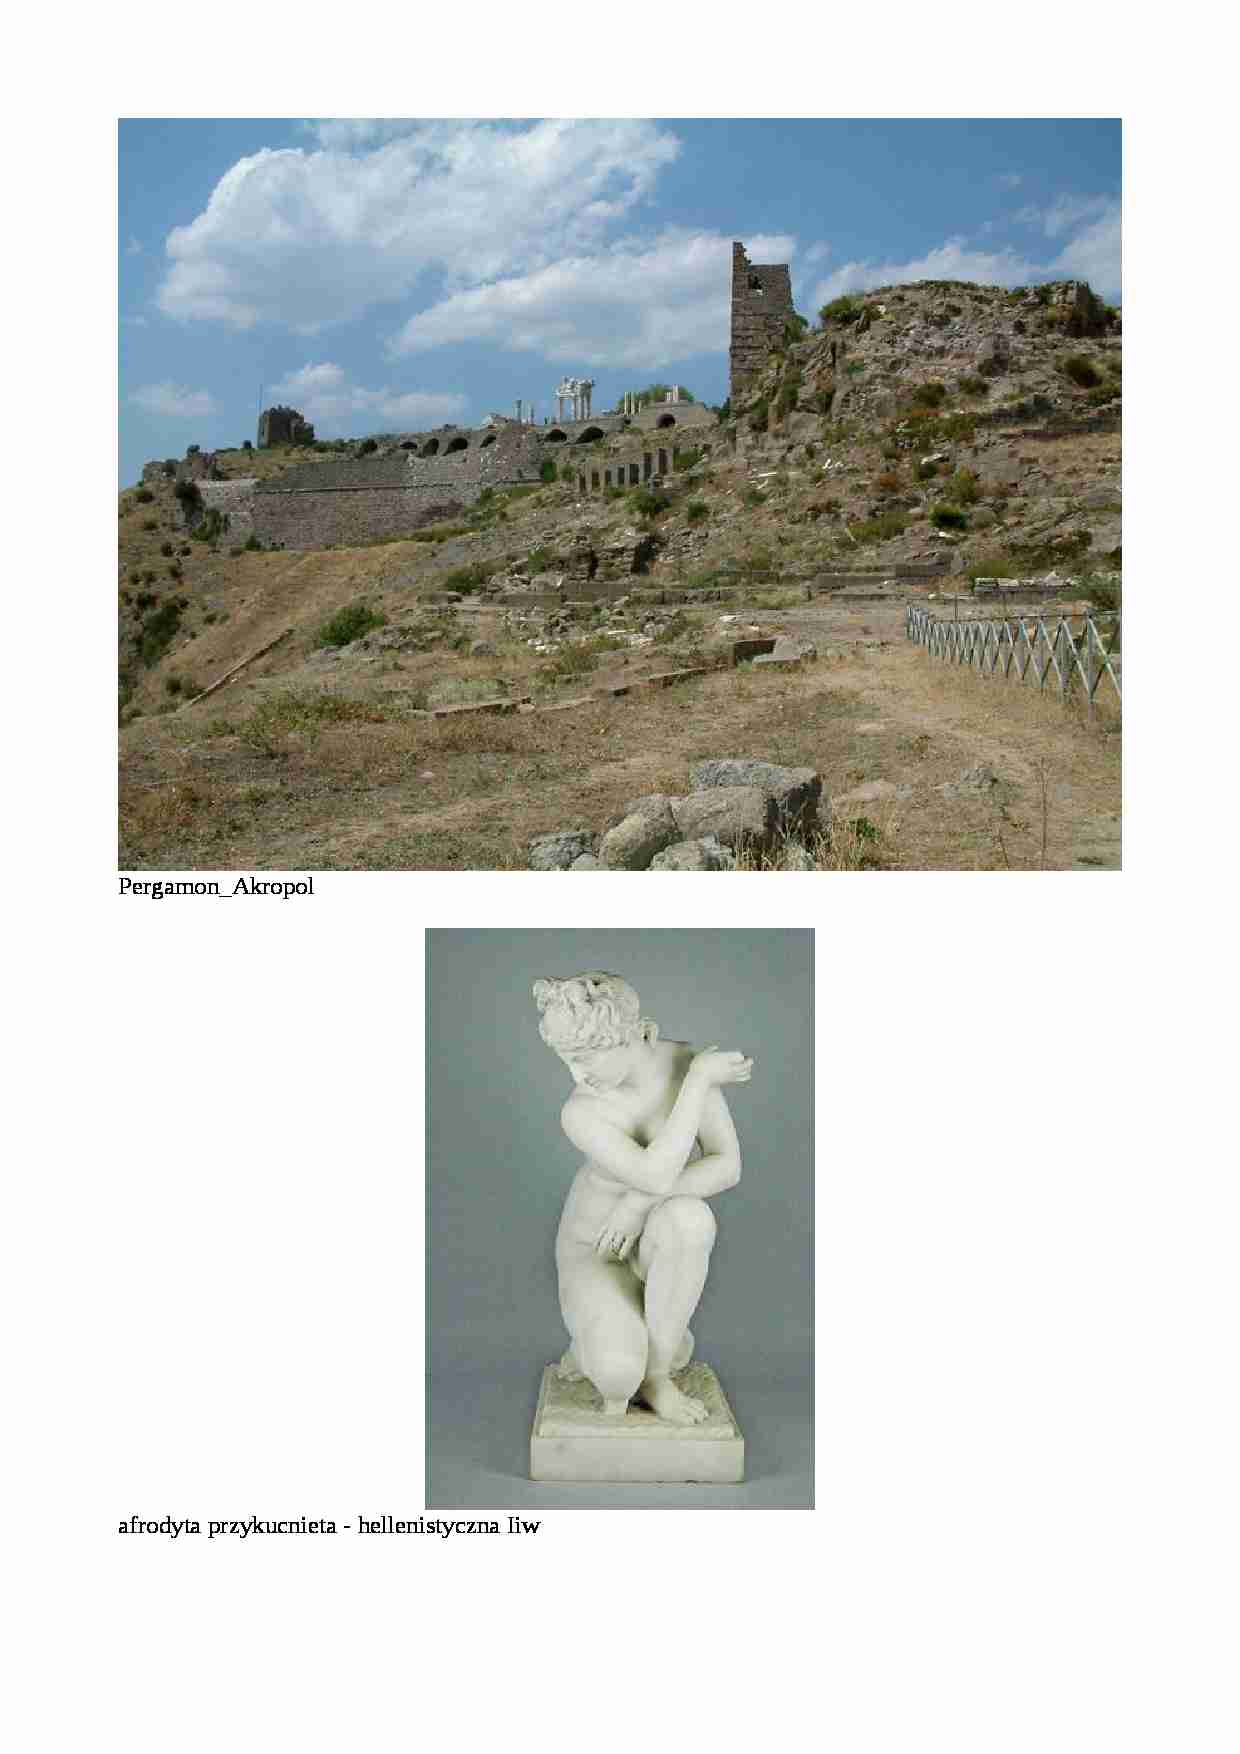 Grecja hellenistyczna - sztuka  - strona 1